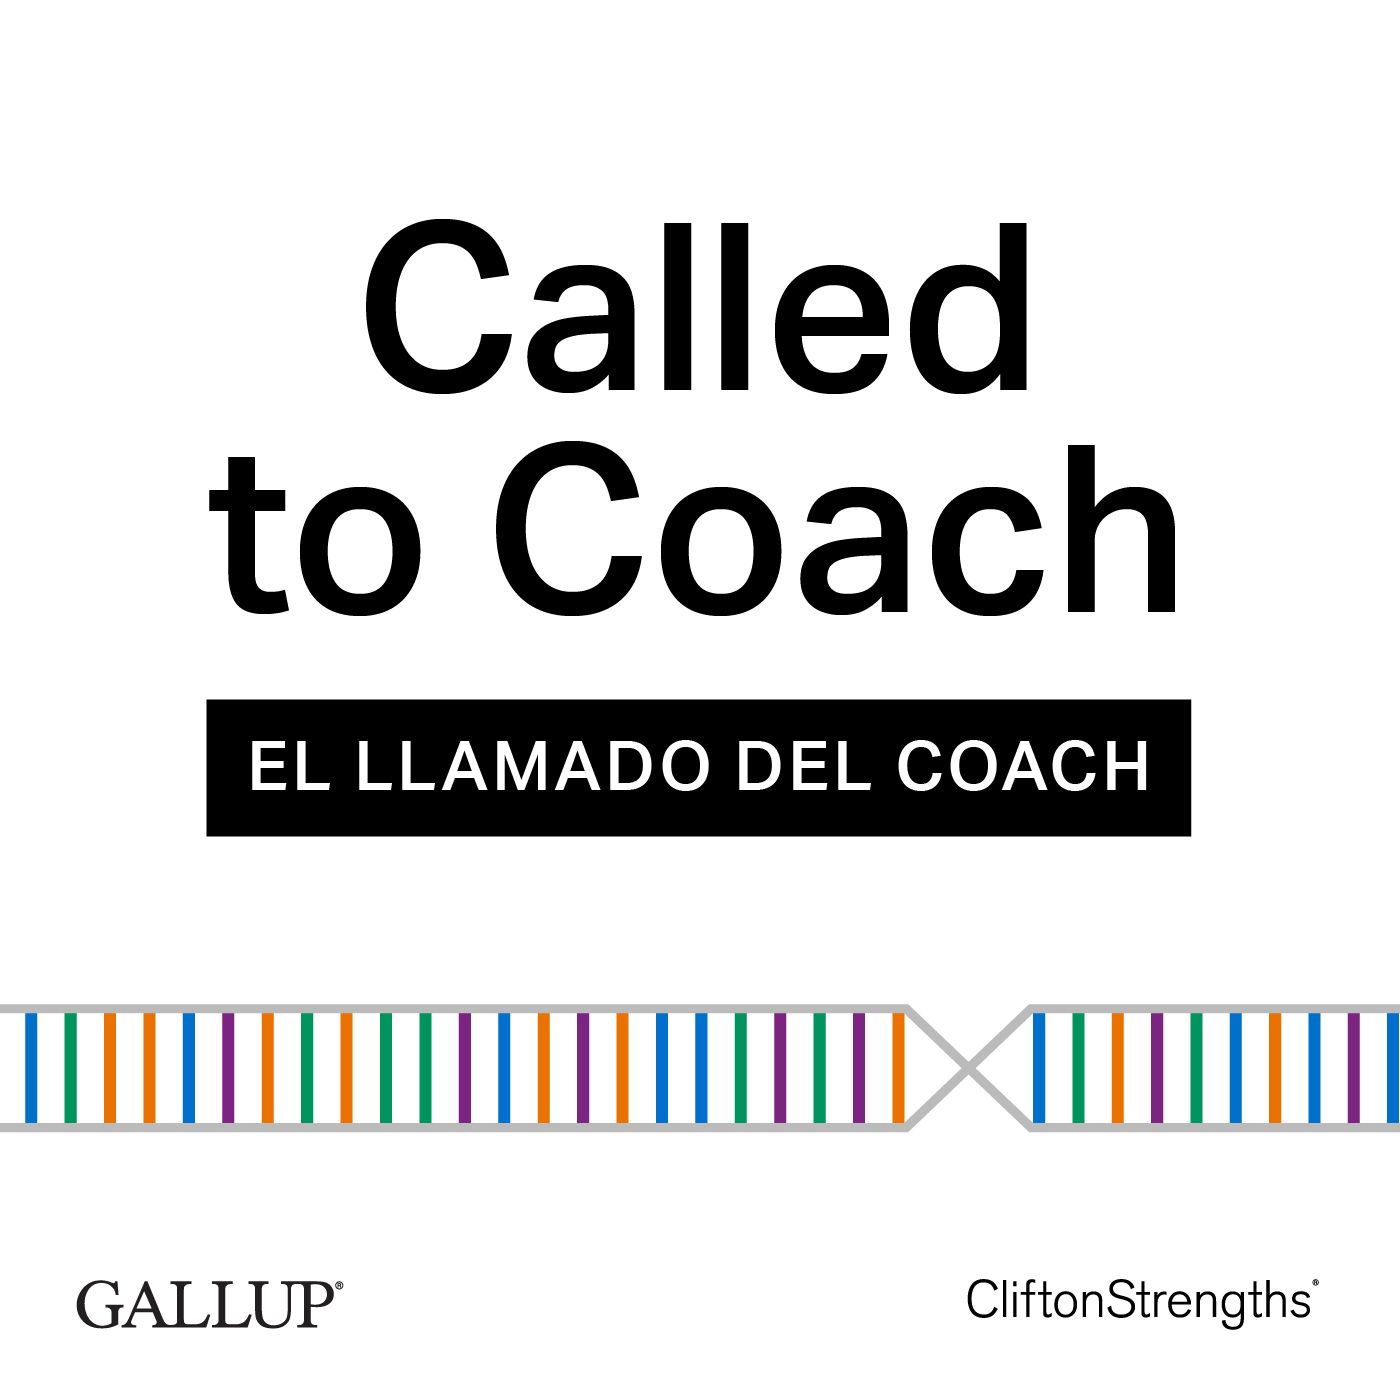 El Llamado del Coach Gallup con Profirio Gómez